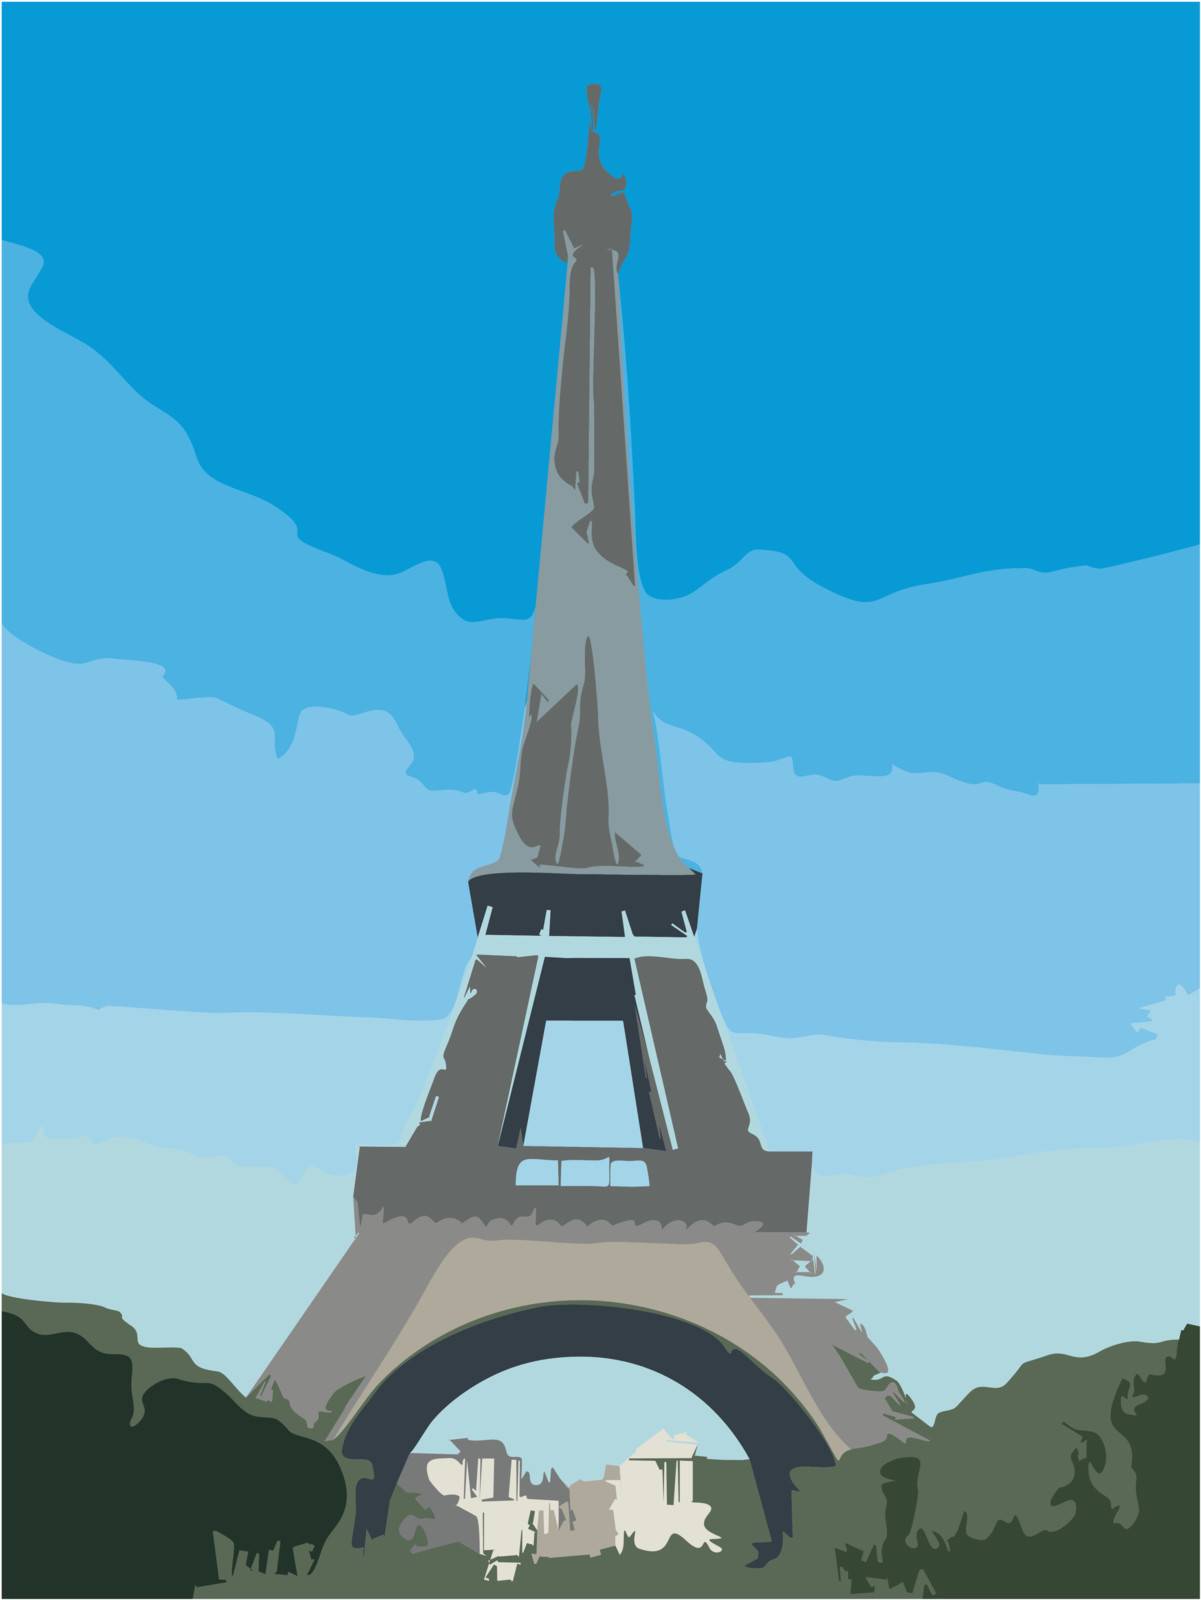 Eiffel Tower in Paris by Situn